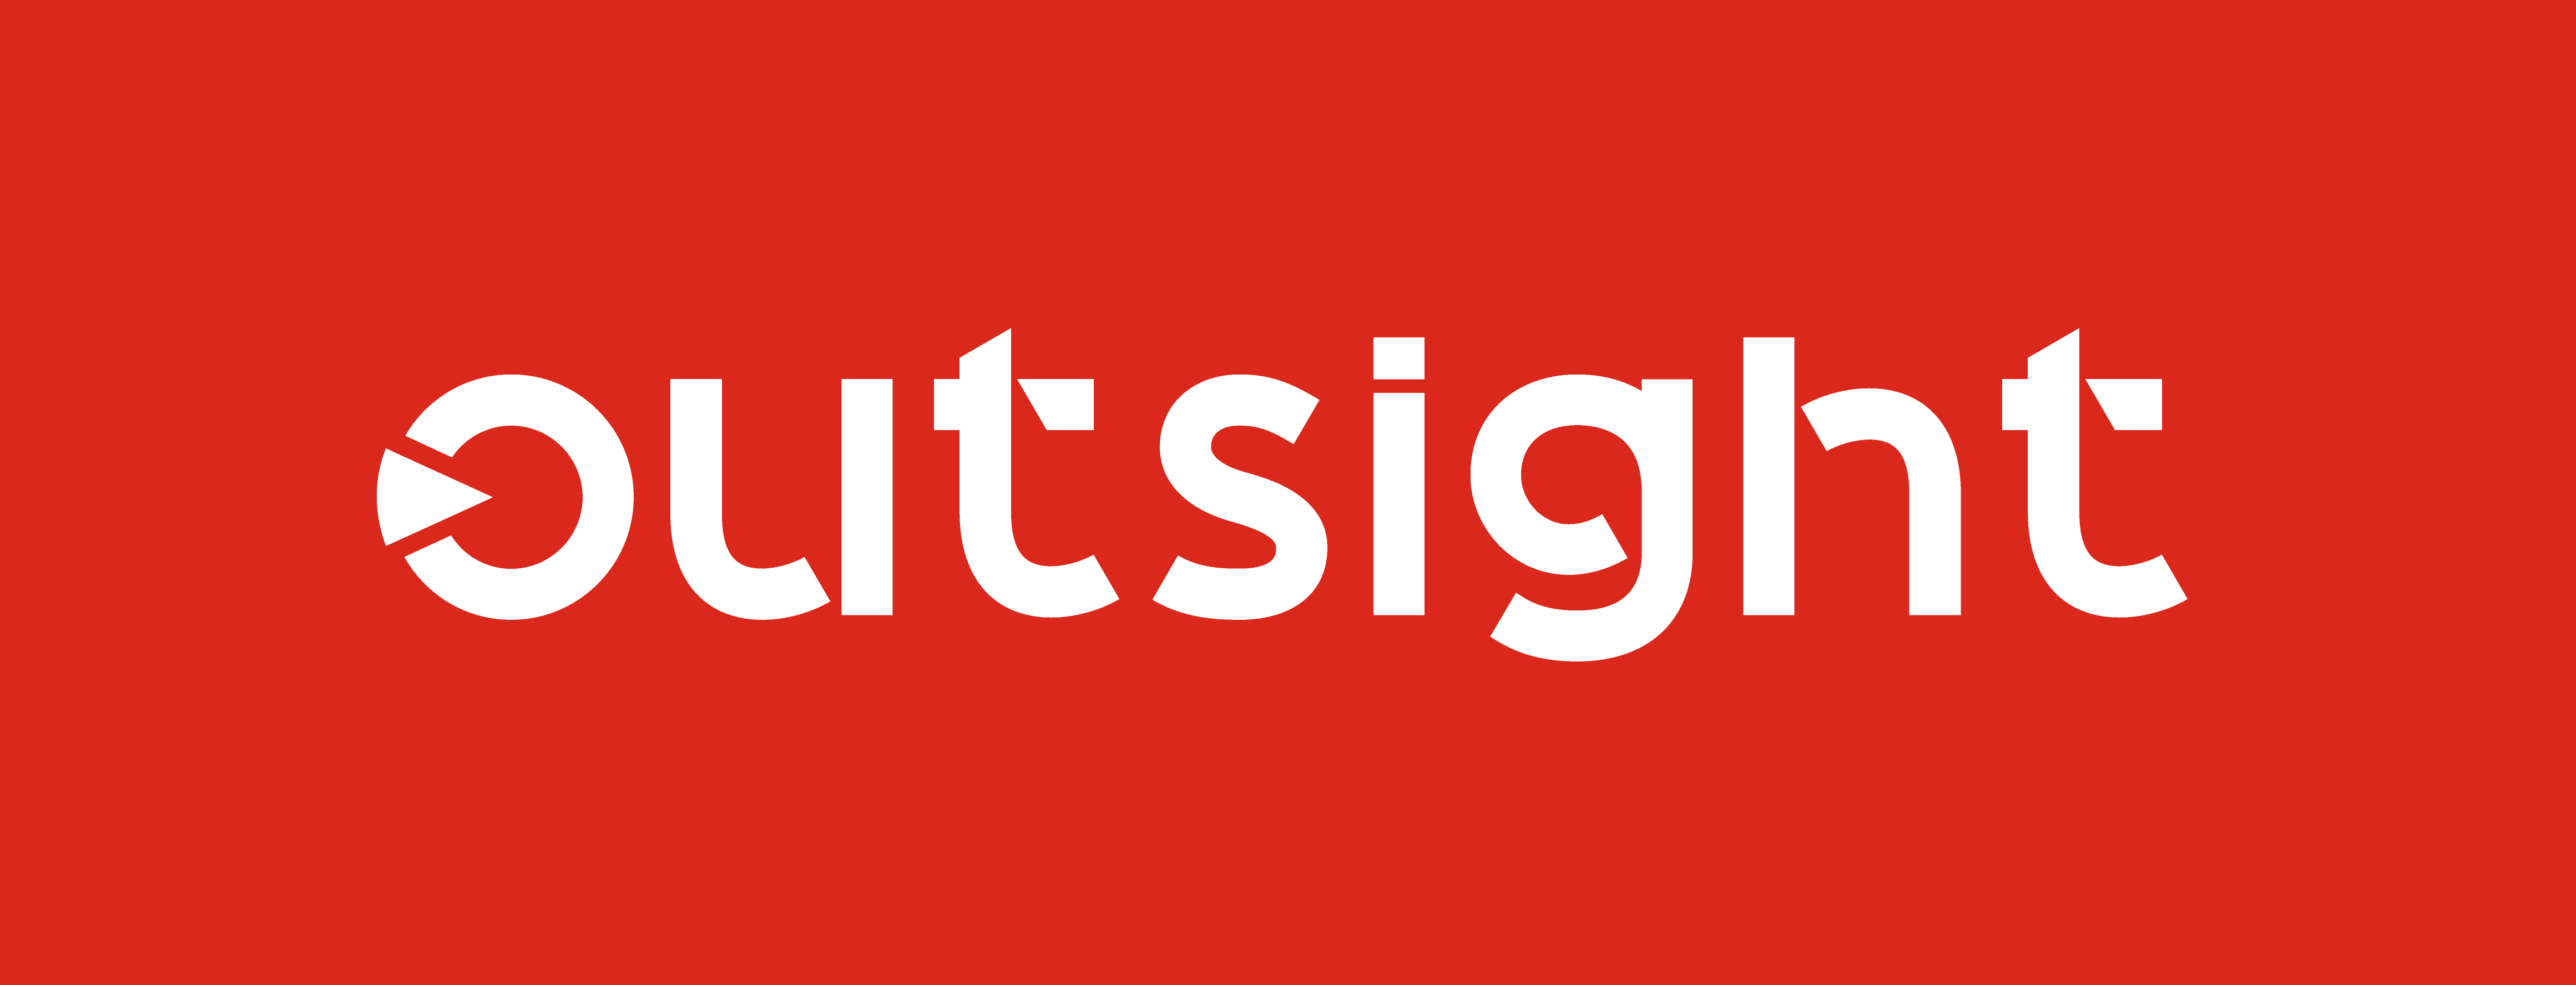 Insights | Outsight